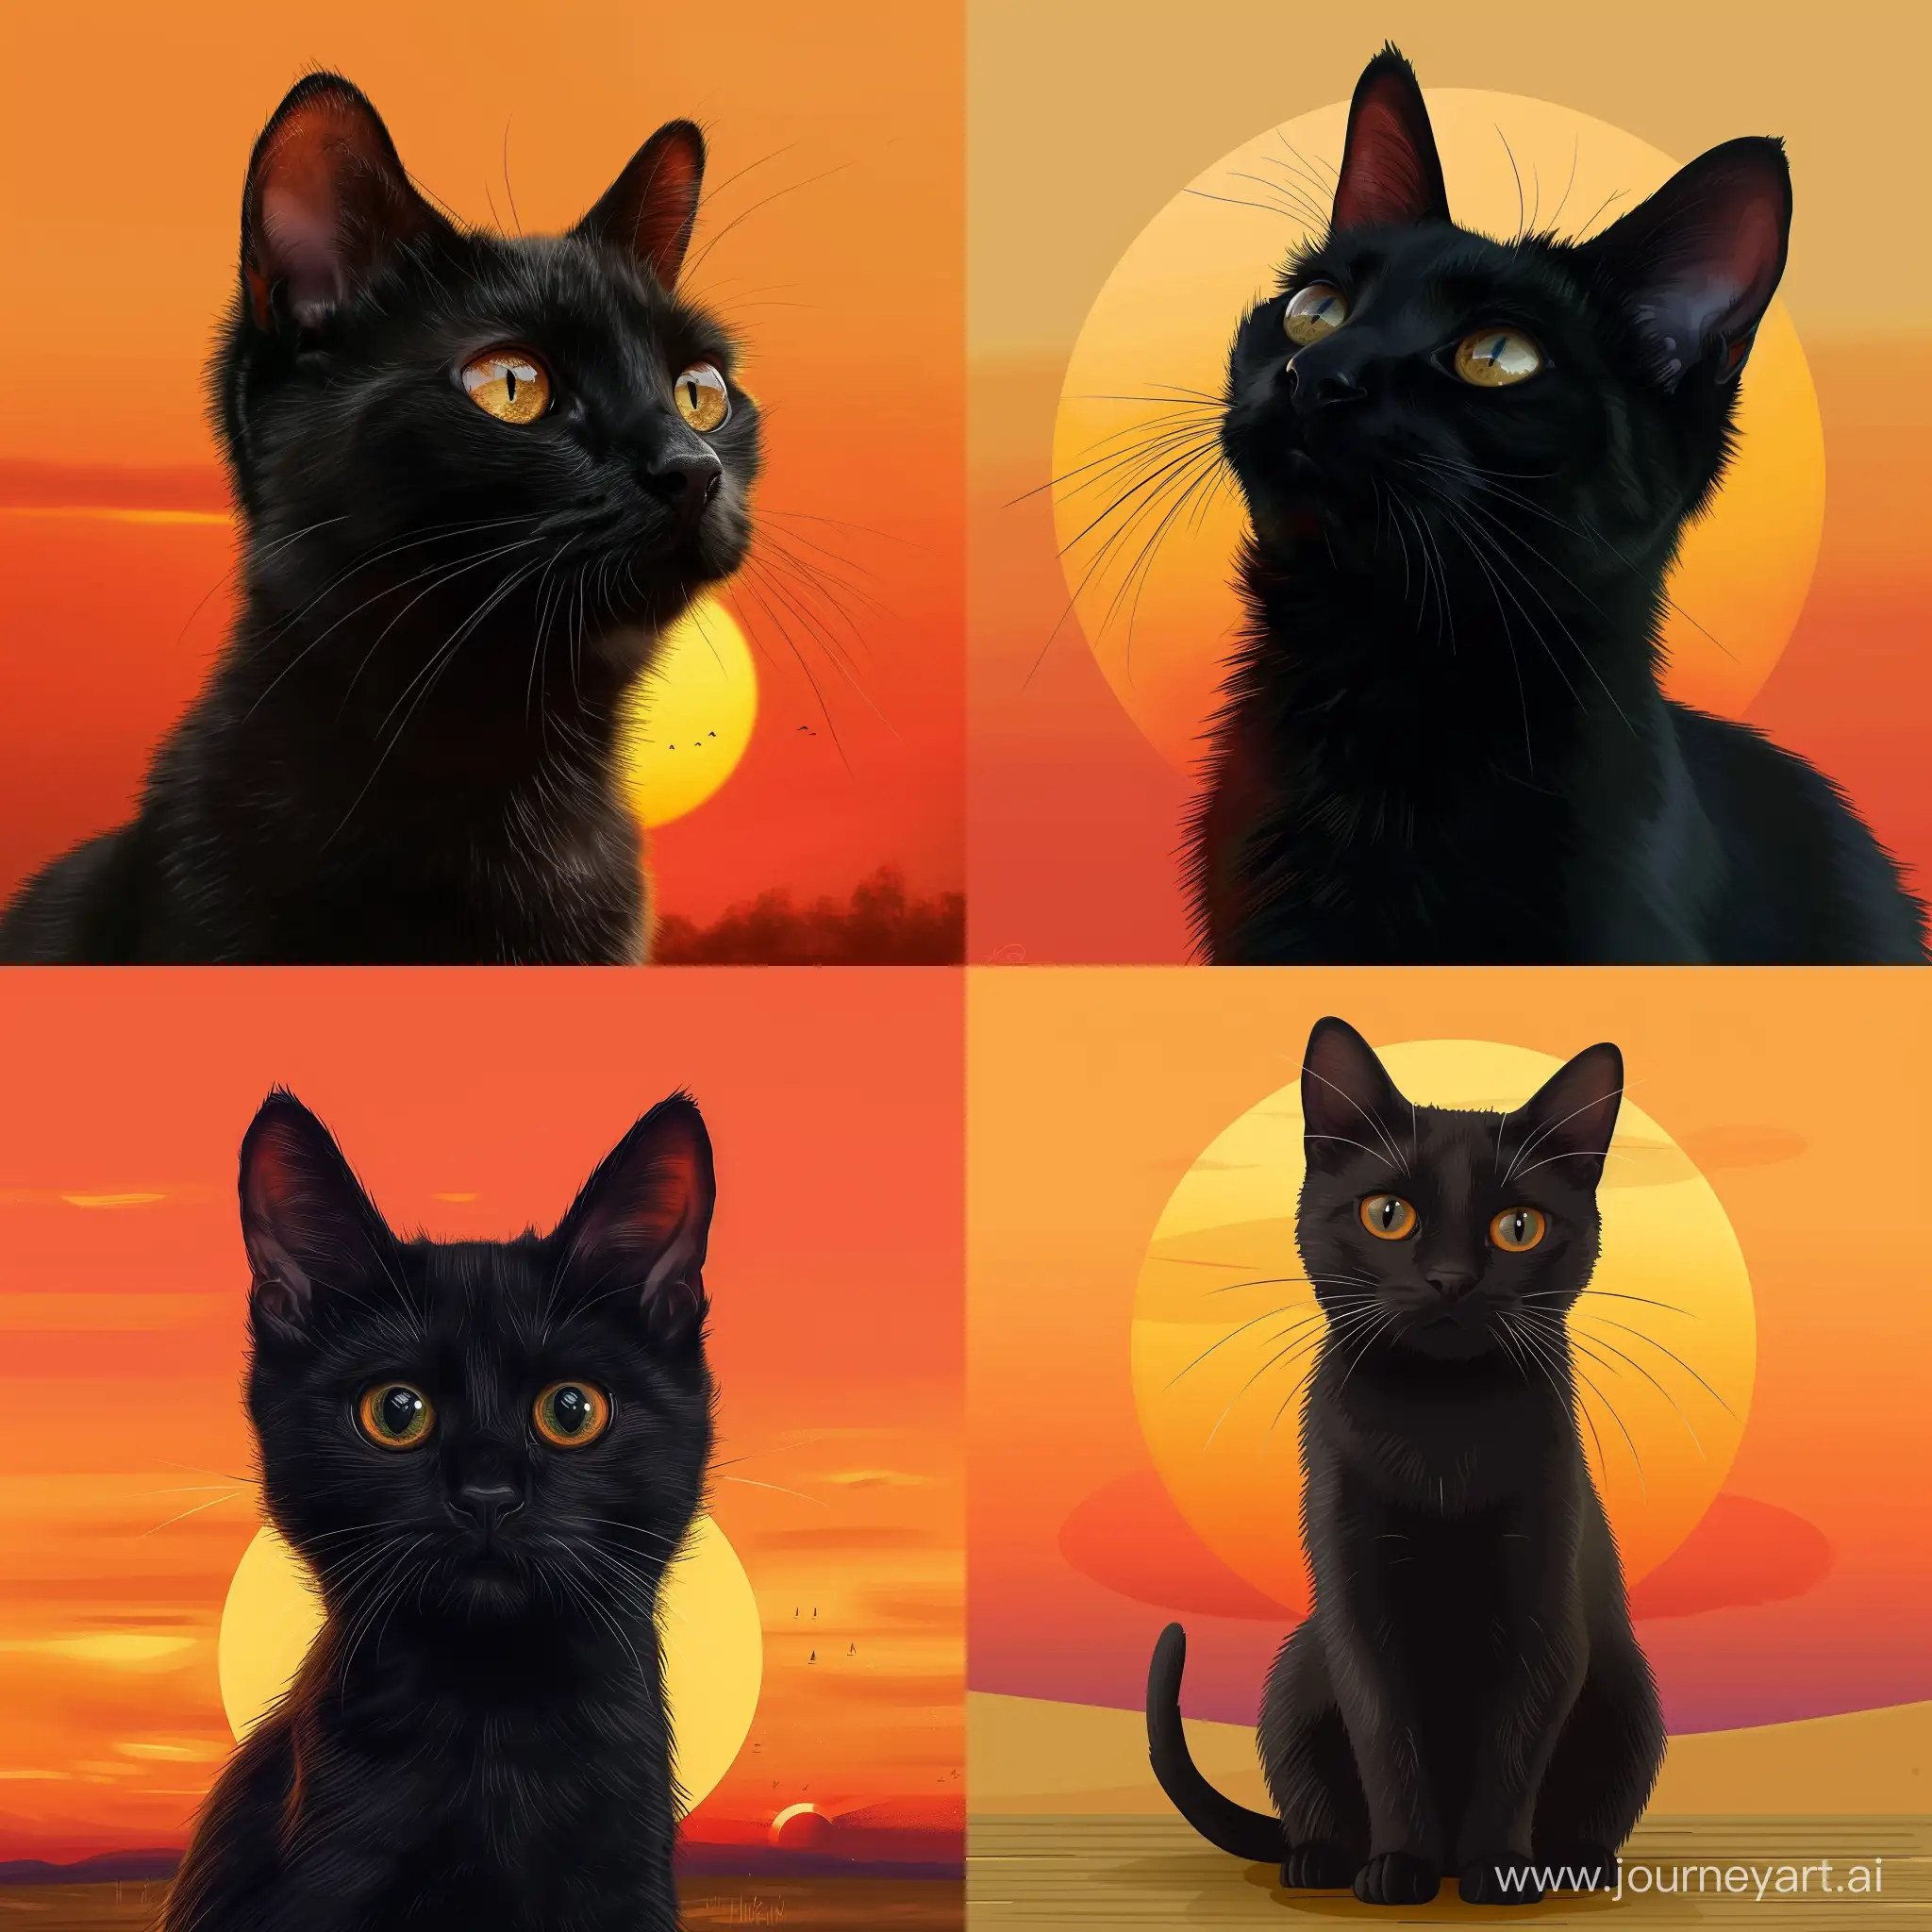 Создай картину реалистичного черного кота на фоне оранжевого заката, время года лето 